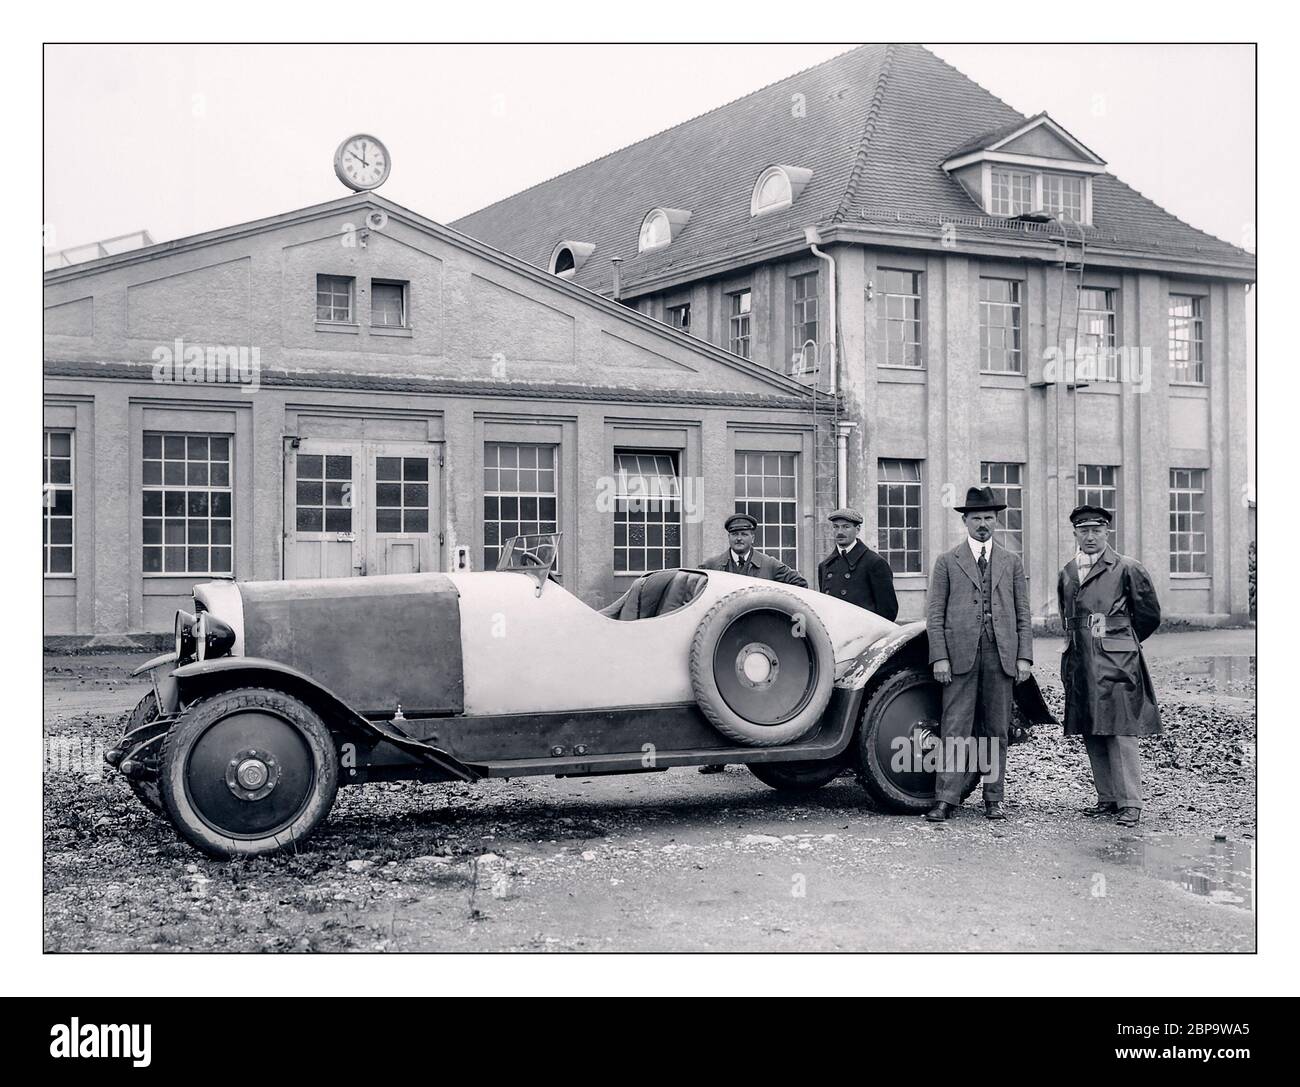 1921 Maybach 22/70 HP W3 , il nuovo marchio Karl Maybach è pronto a presentare la sua prima auto di produzione al Salone di Berlino nel settembre 1921 – Maybach W 3. Il veicolo lungo cinque metri, che ha raggiunto velocità fino a 110 km/h, è stato alimentato dal motore W 2 da 70 cv (52 kW) in linea a sei cilindri. Le caratteristiche innovative del W 3 includevano un sistema di frenatura a quattro ruote con compensazione meccanica della potenza frenante e una trasmissione a due velocità senza cambio. Le marce sono state cambiate premendo una leva di avviamento azionata a pedale. Foto Stock